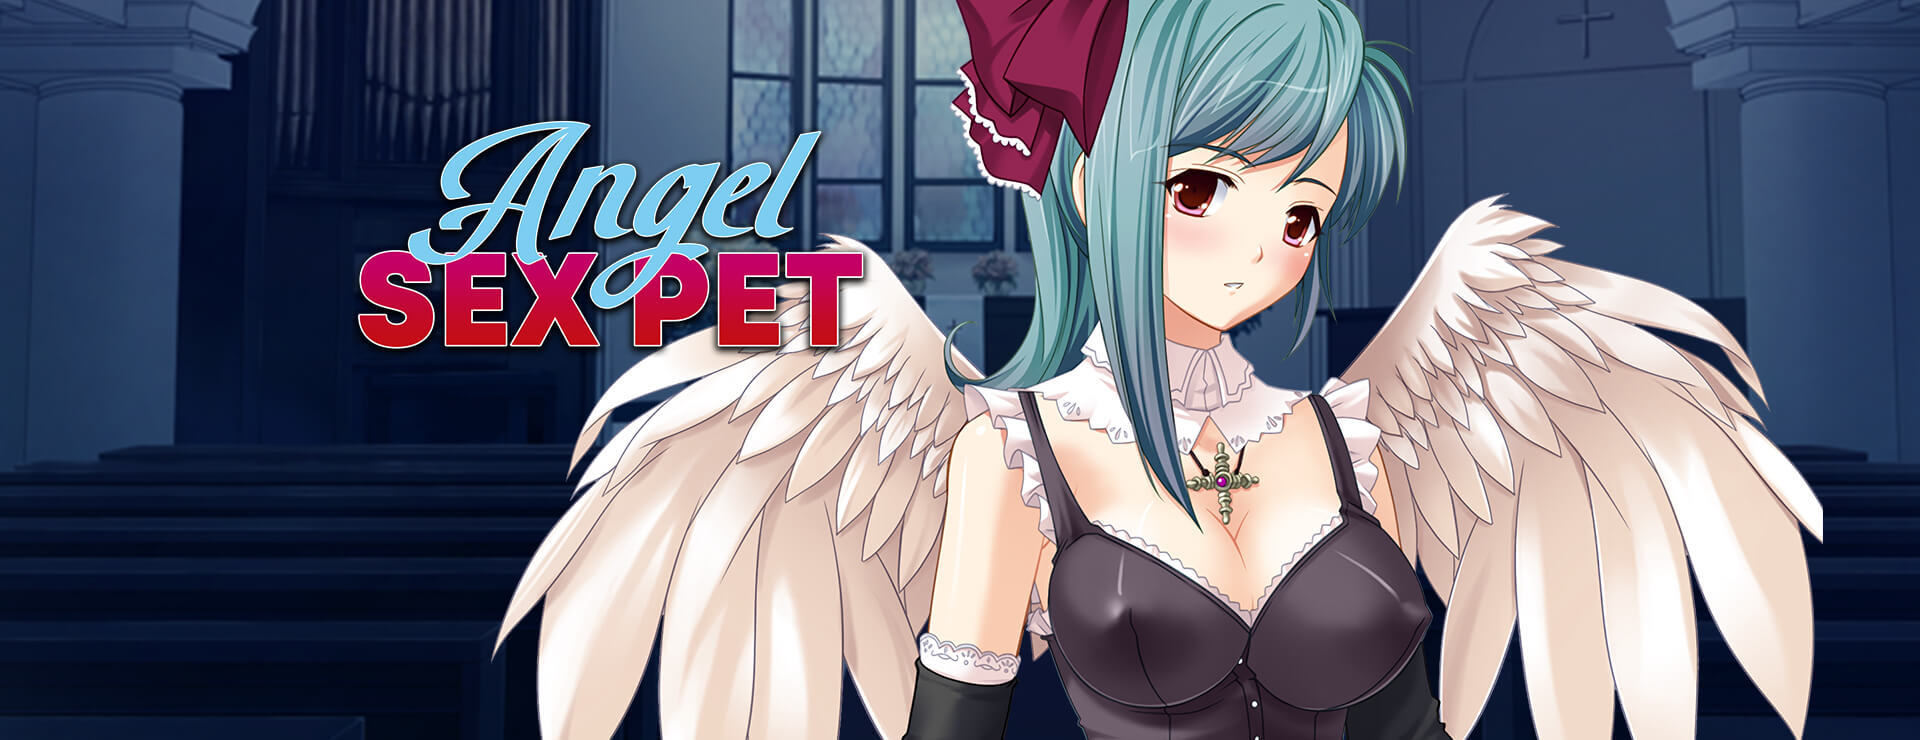 Angel Sex Pet - ビジュアルノベル ゲーム